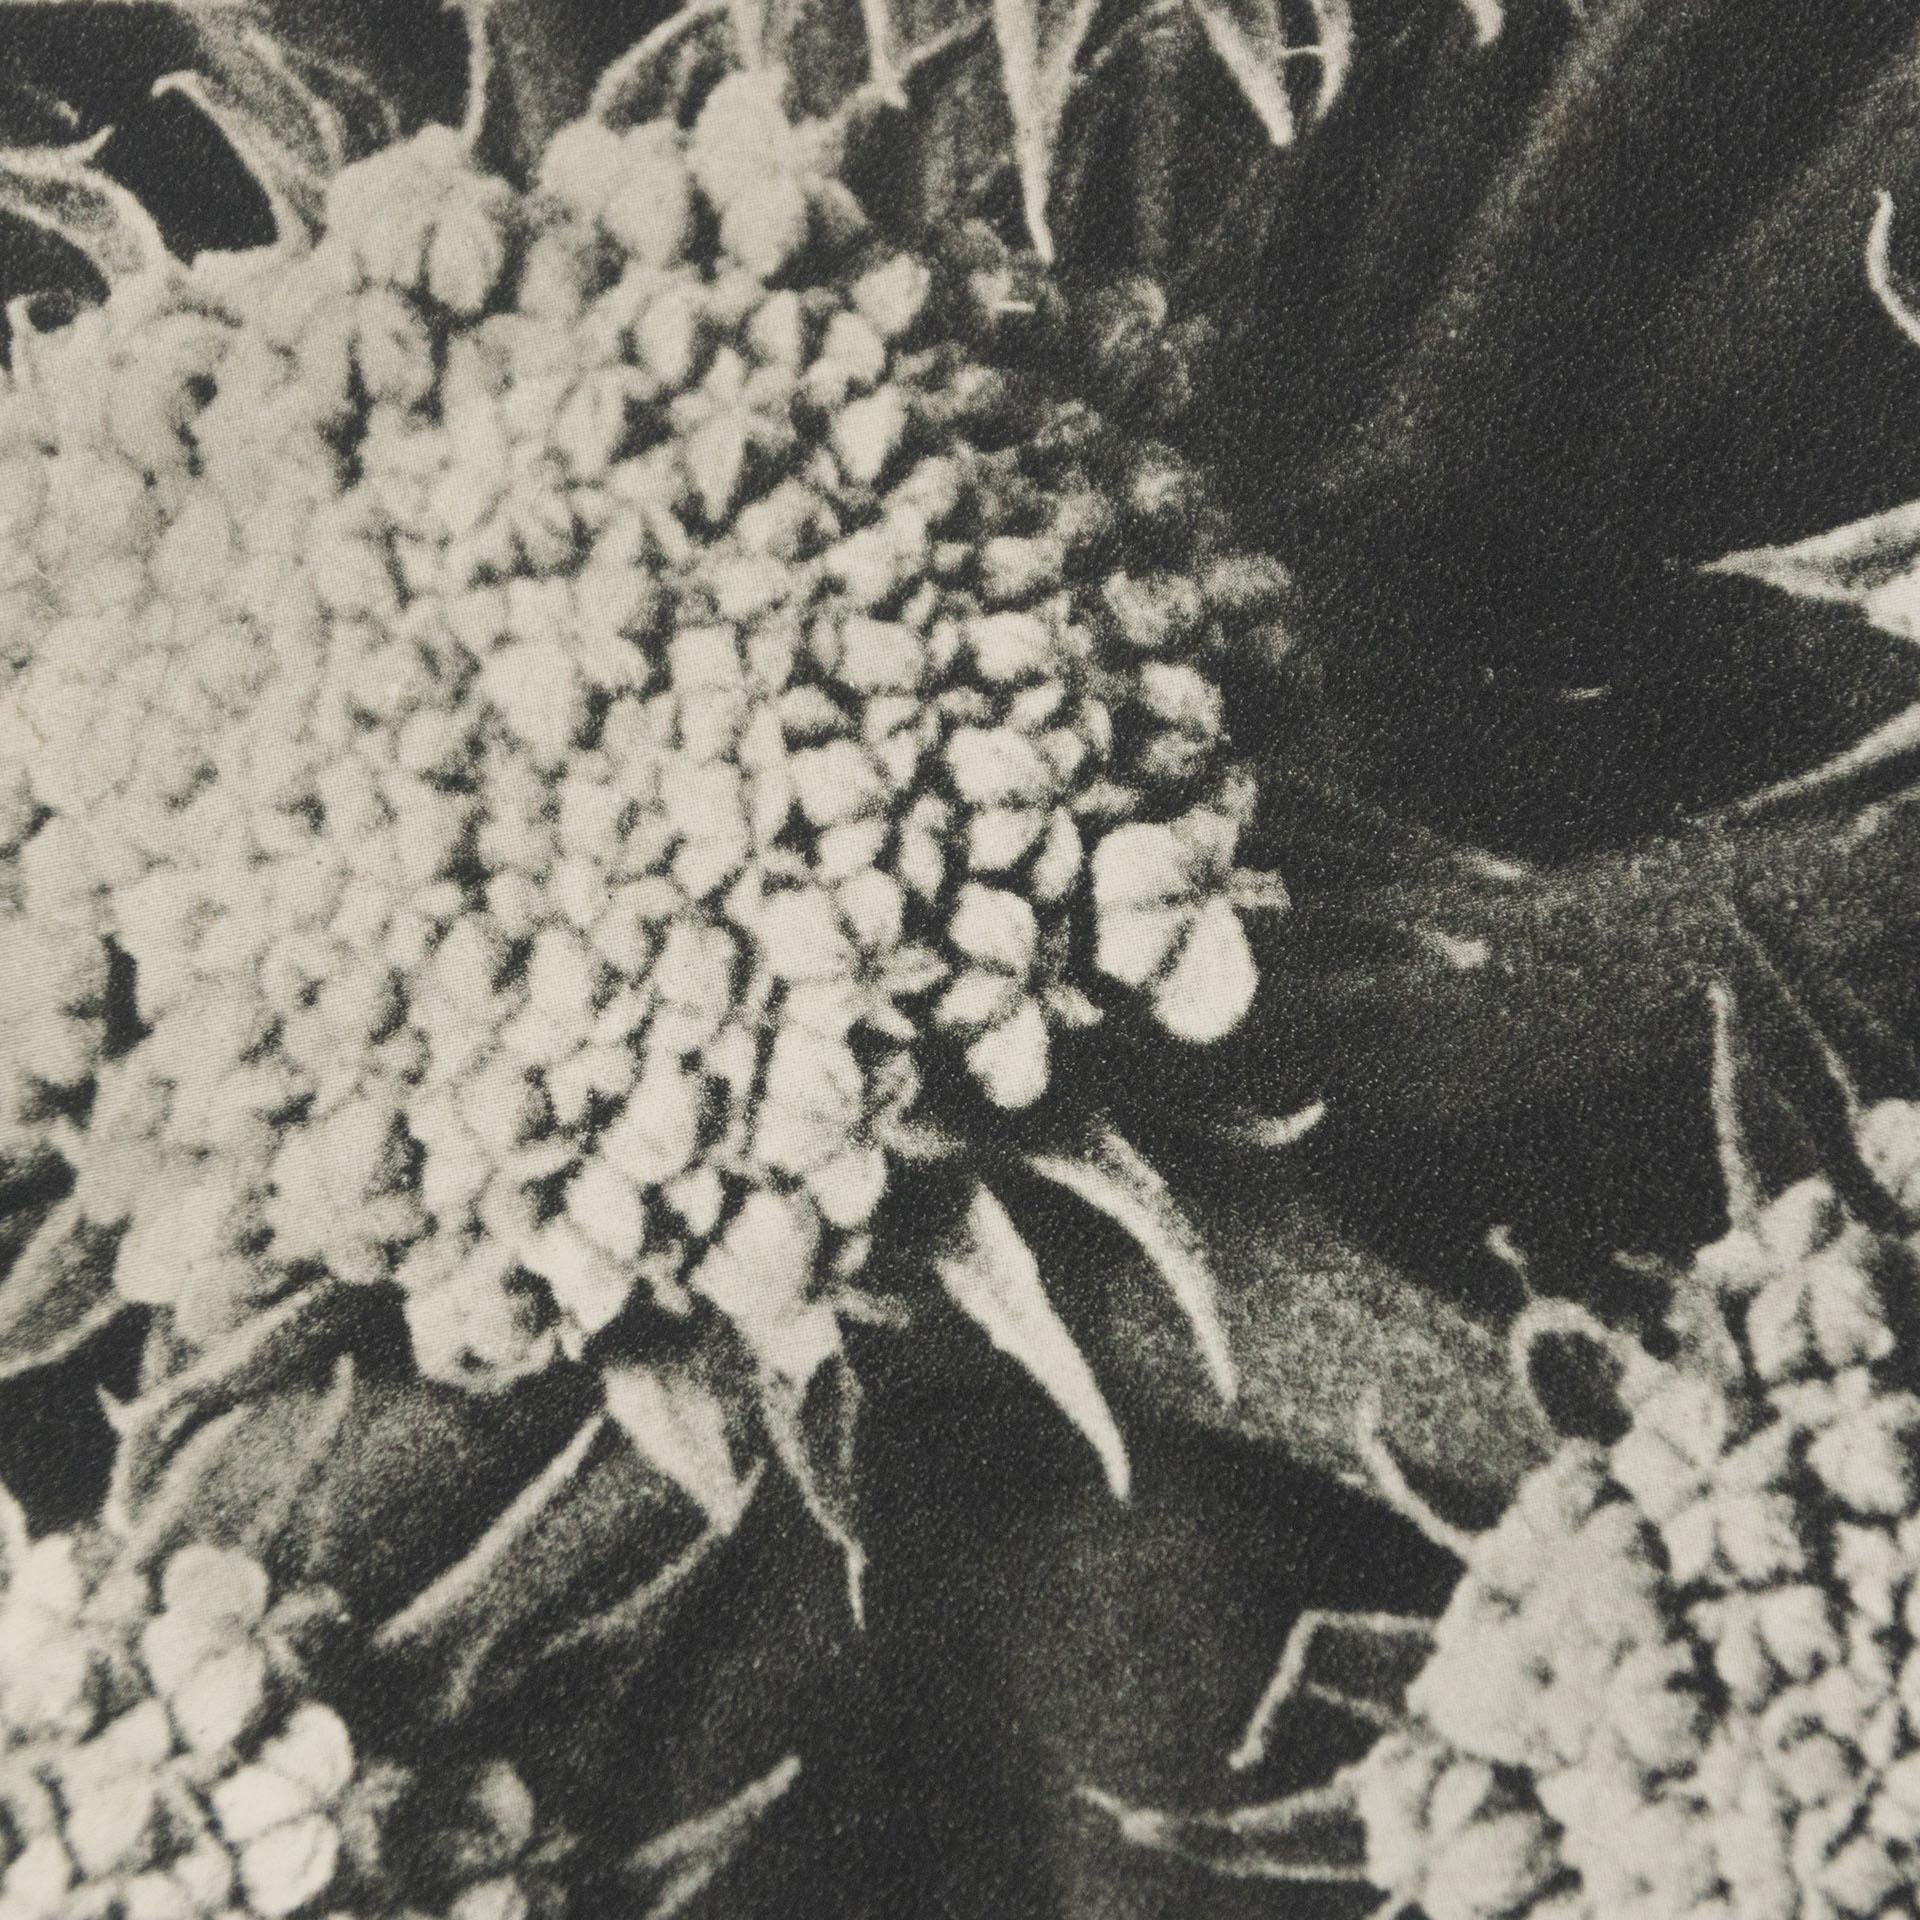 Karl Blossfeldt Black White Flower Photogravure Botanic Photography, 1942 4